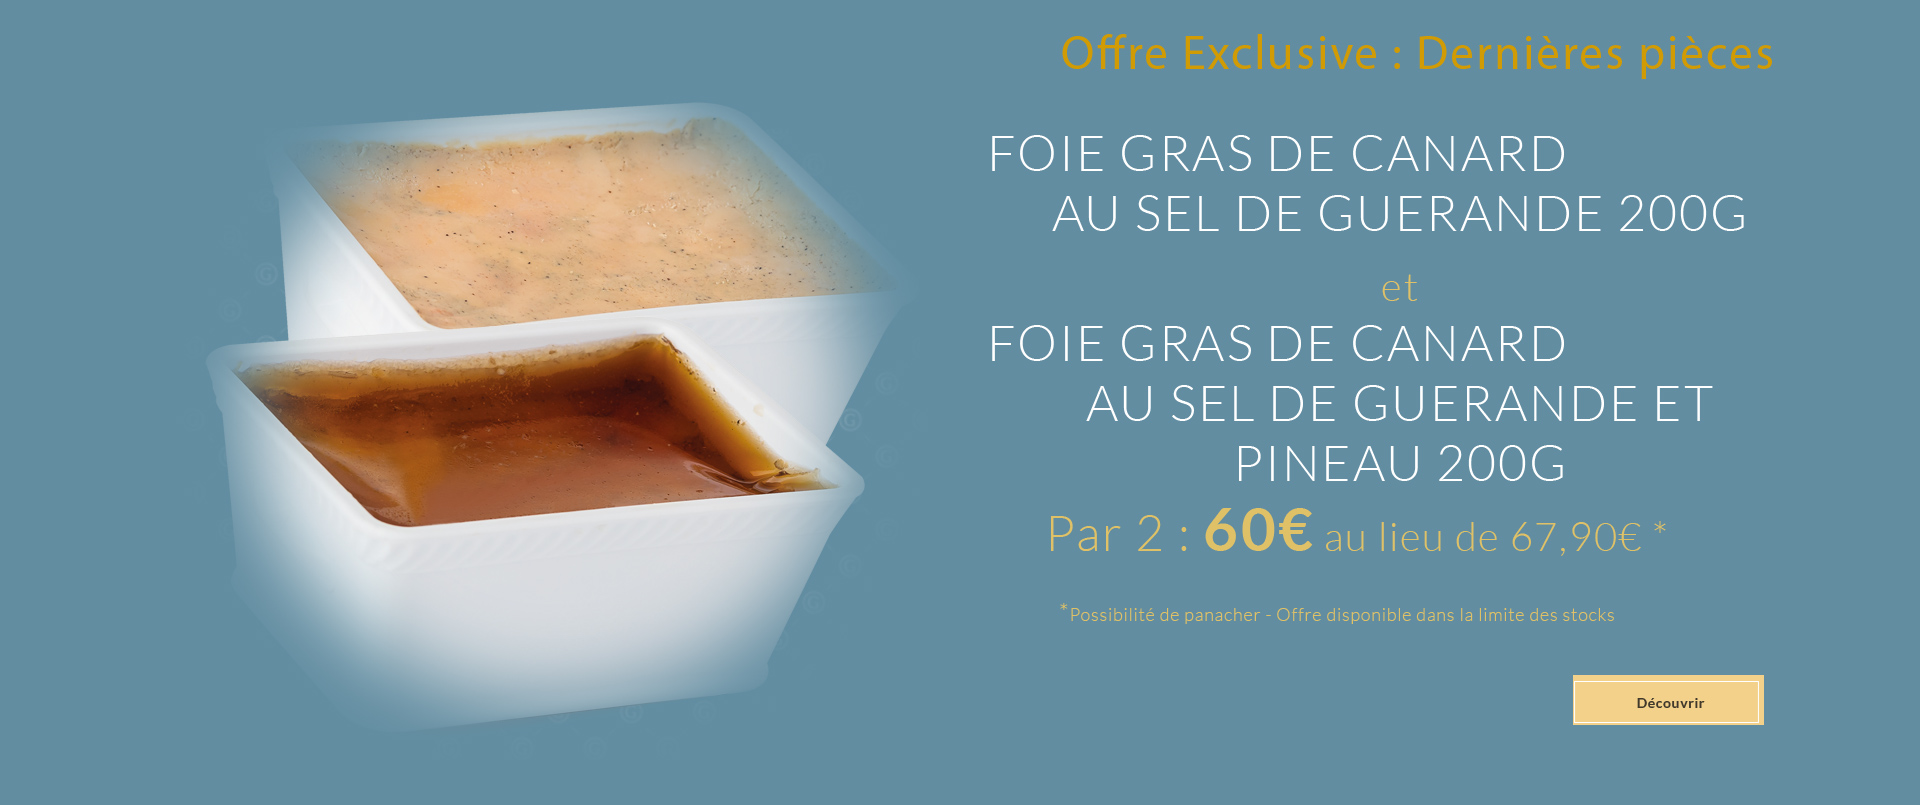 Offre Foies Gras de Canard au Sel de Guérande